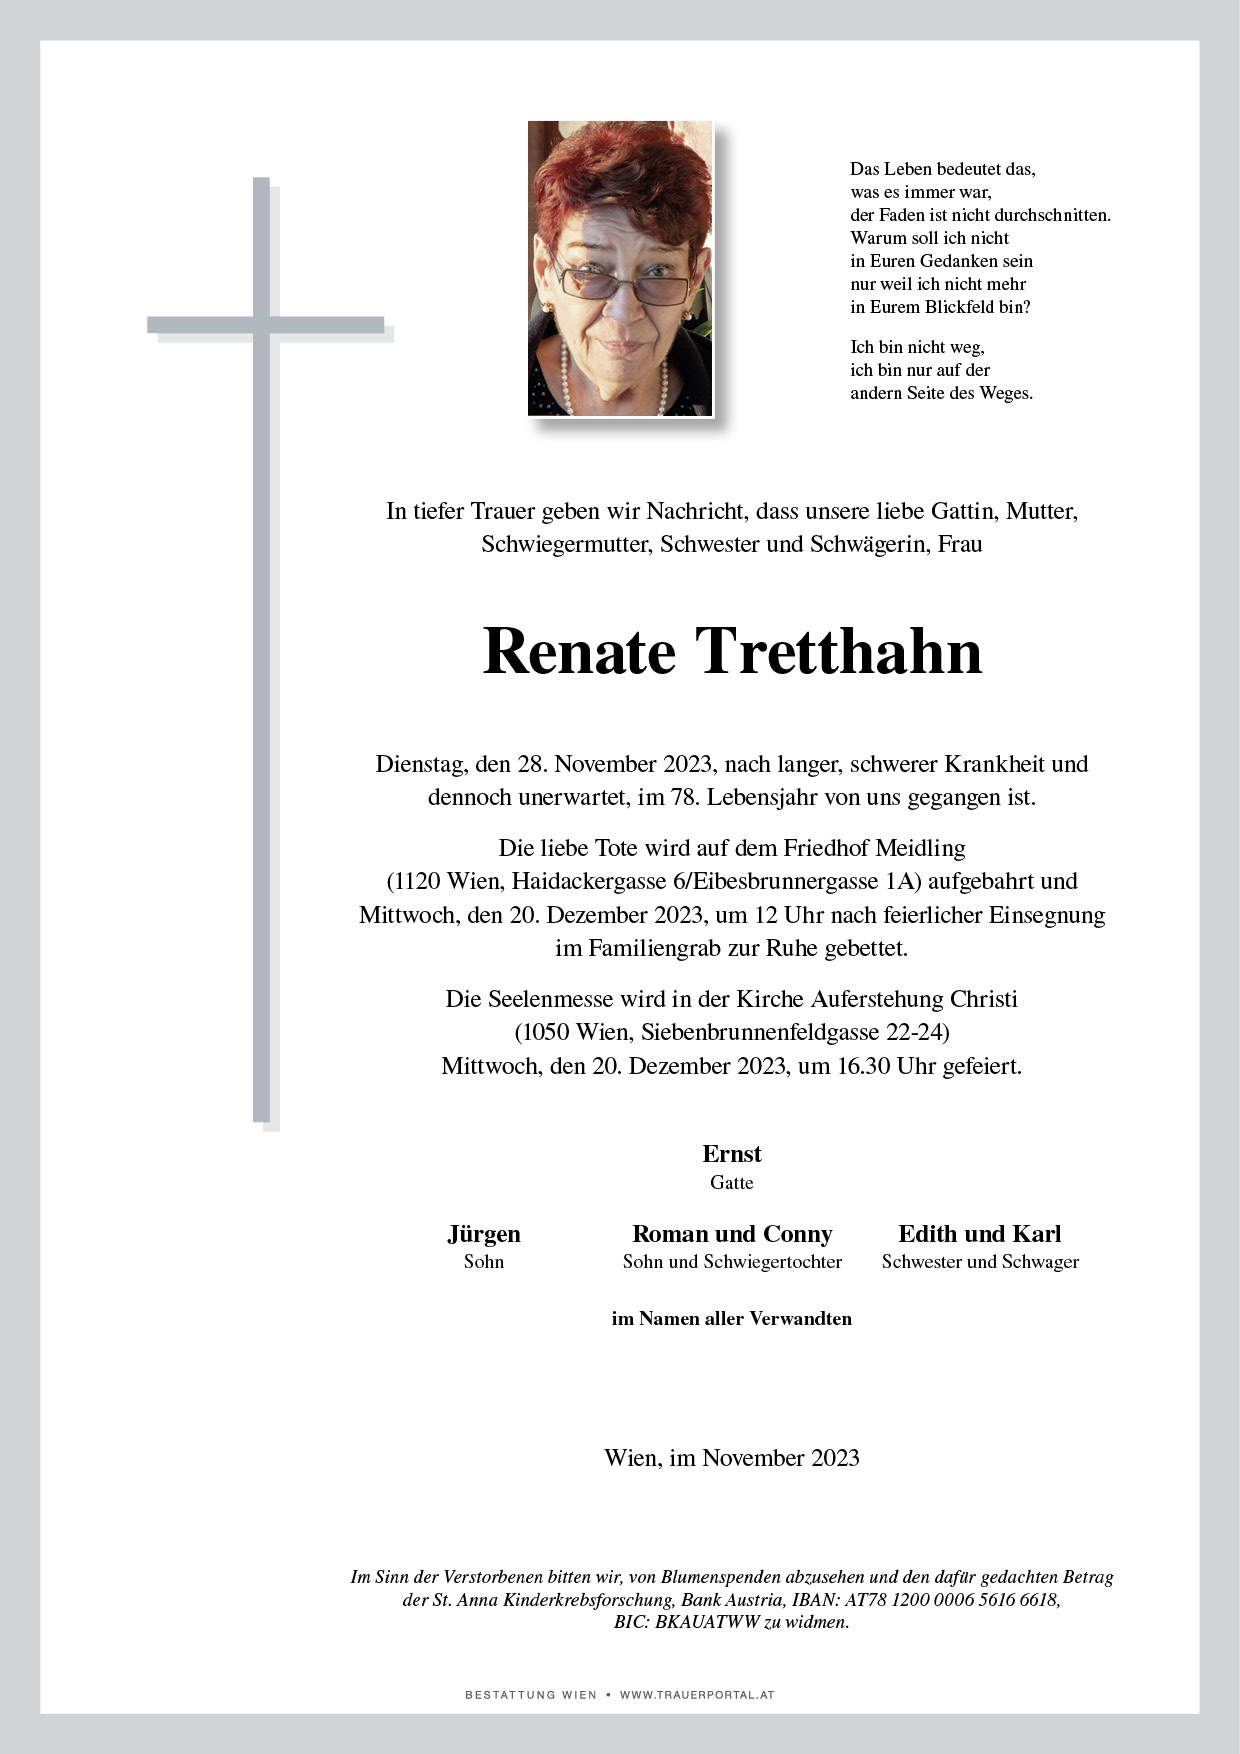 Renate Tretthahn